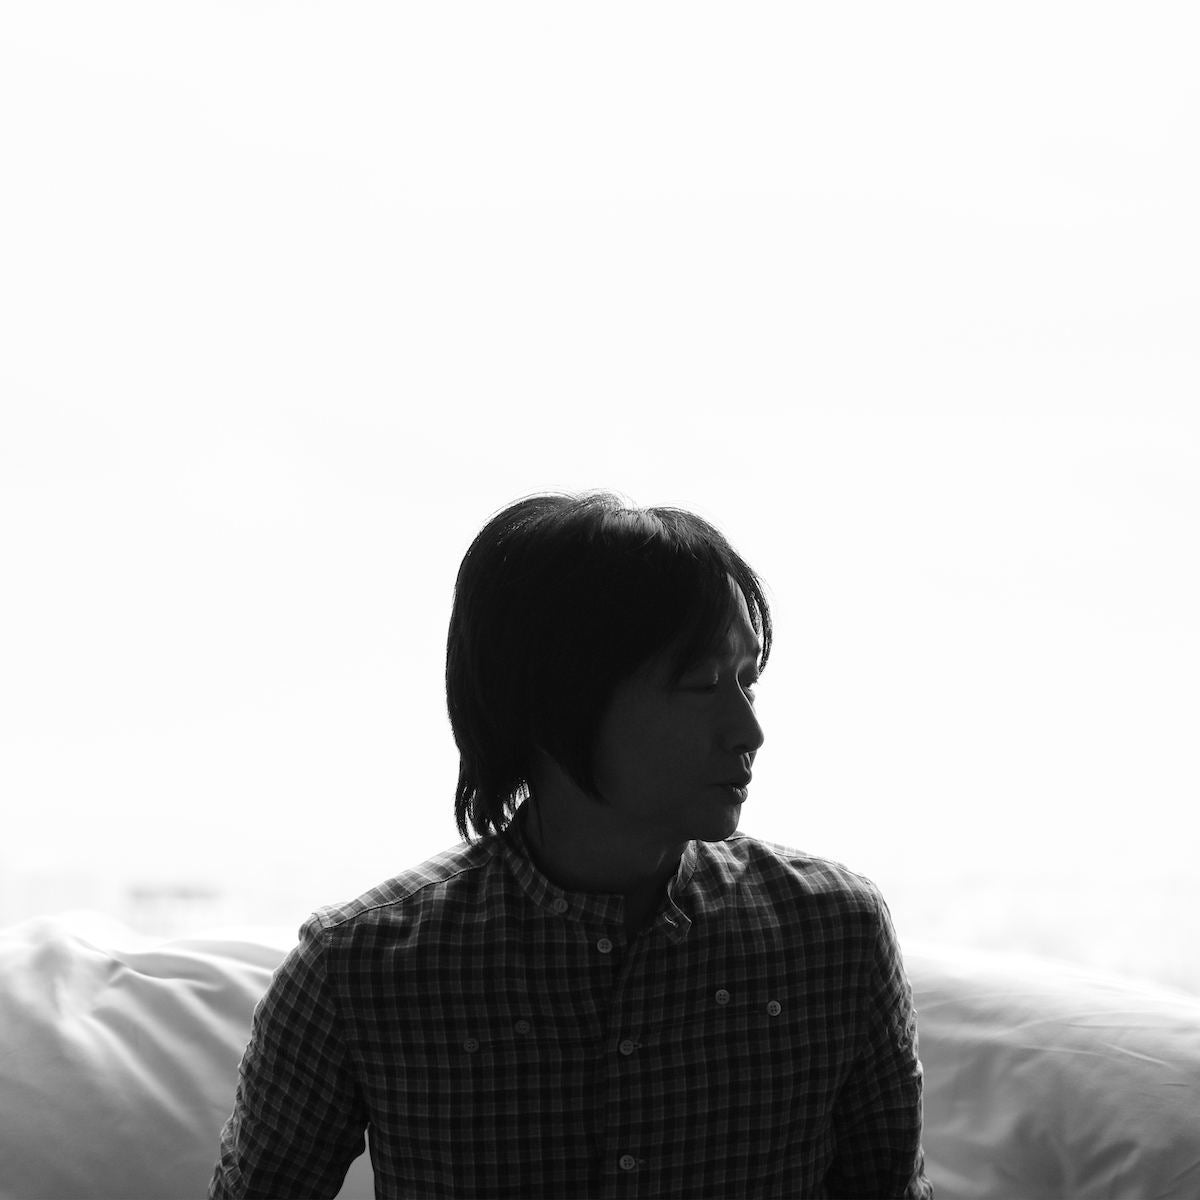 小沢健二 25年ぶりドラマ曲 7歳長男の発案から生まれた楽曲 Opのスキップ対策も マイナビニュース